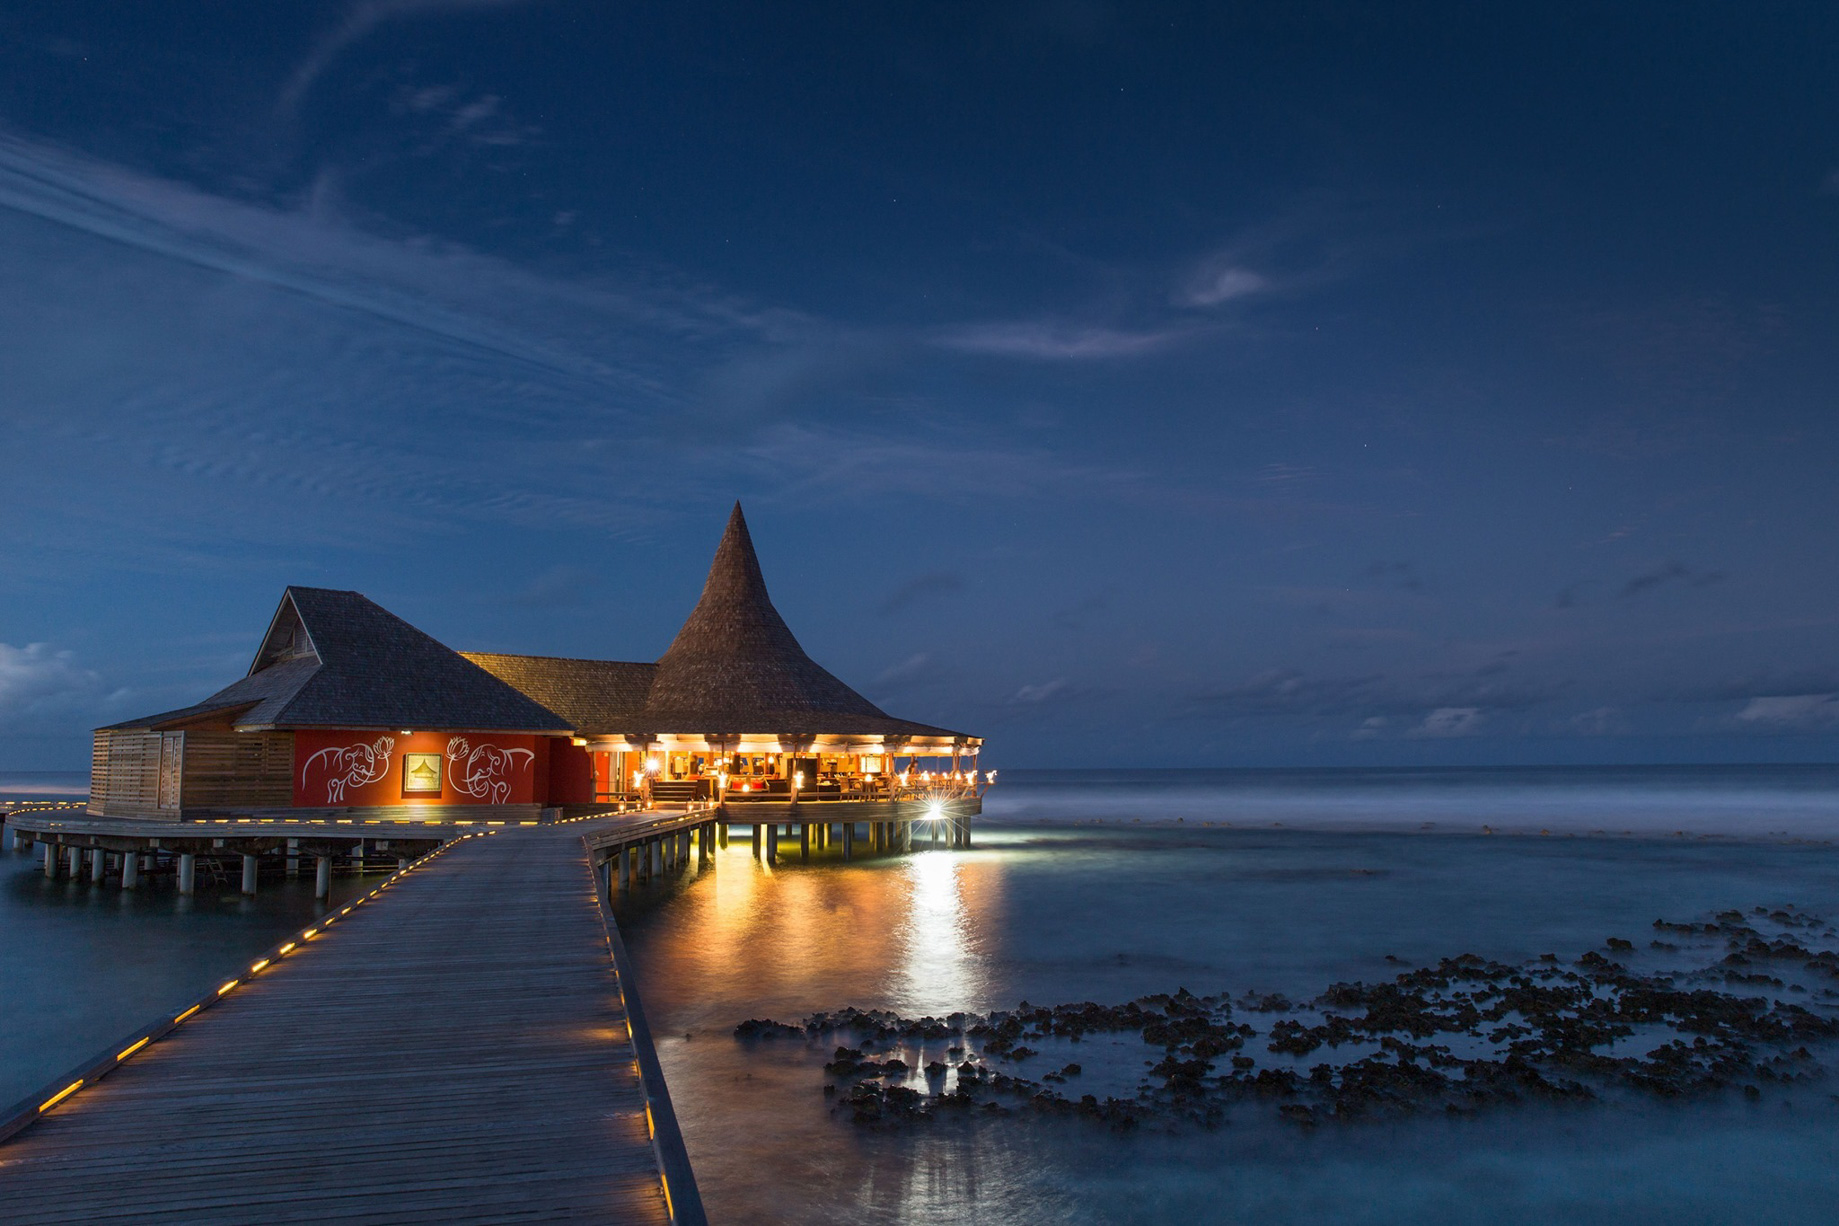 Anantara Veli Maldives Resort - South Male Atoll, Maldives - Baan Huraa Restaurant Night View